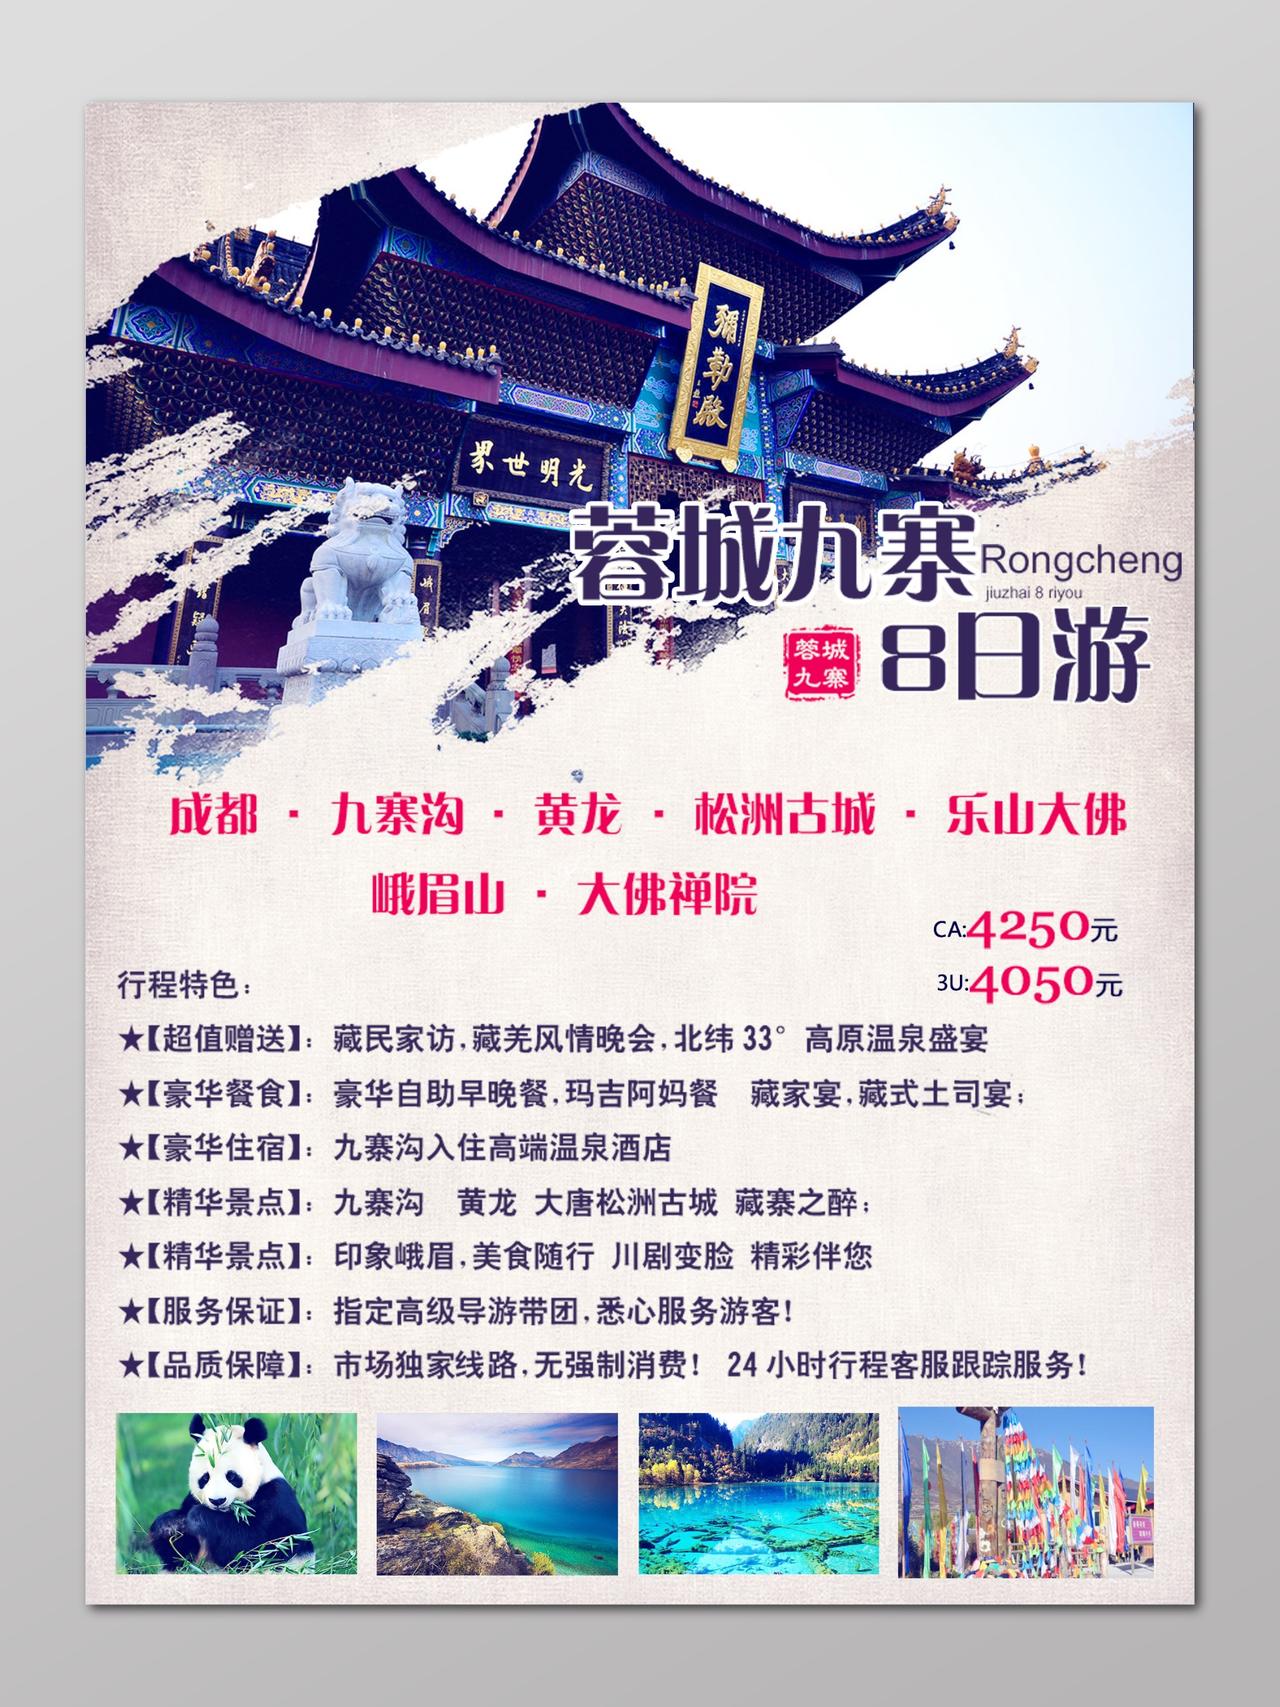 成都九寨沟旅游四川蓉城旅游行程宣传海报设计